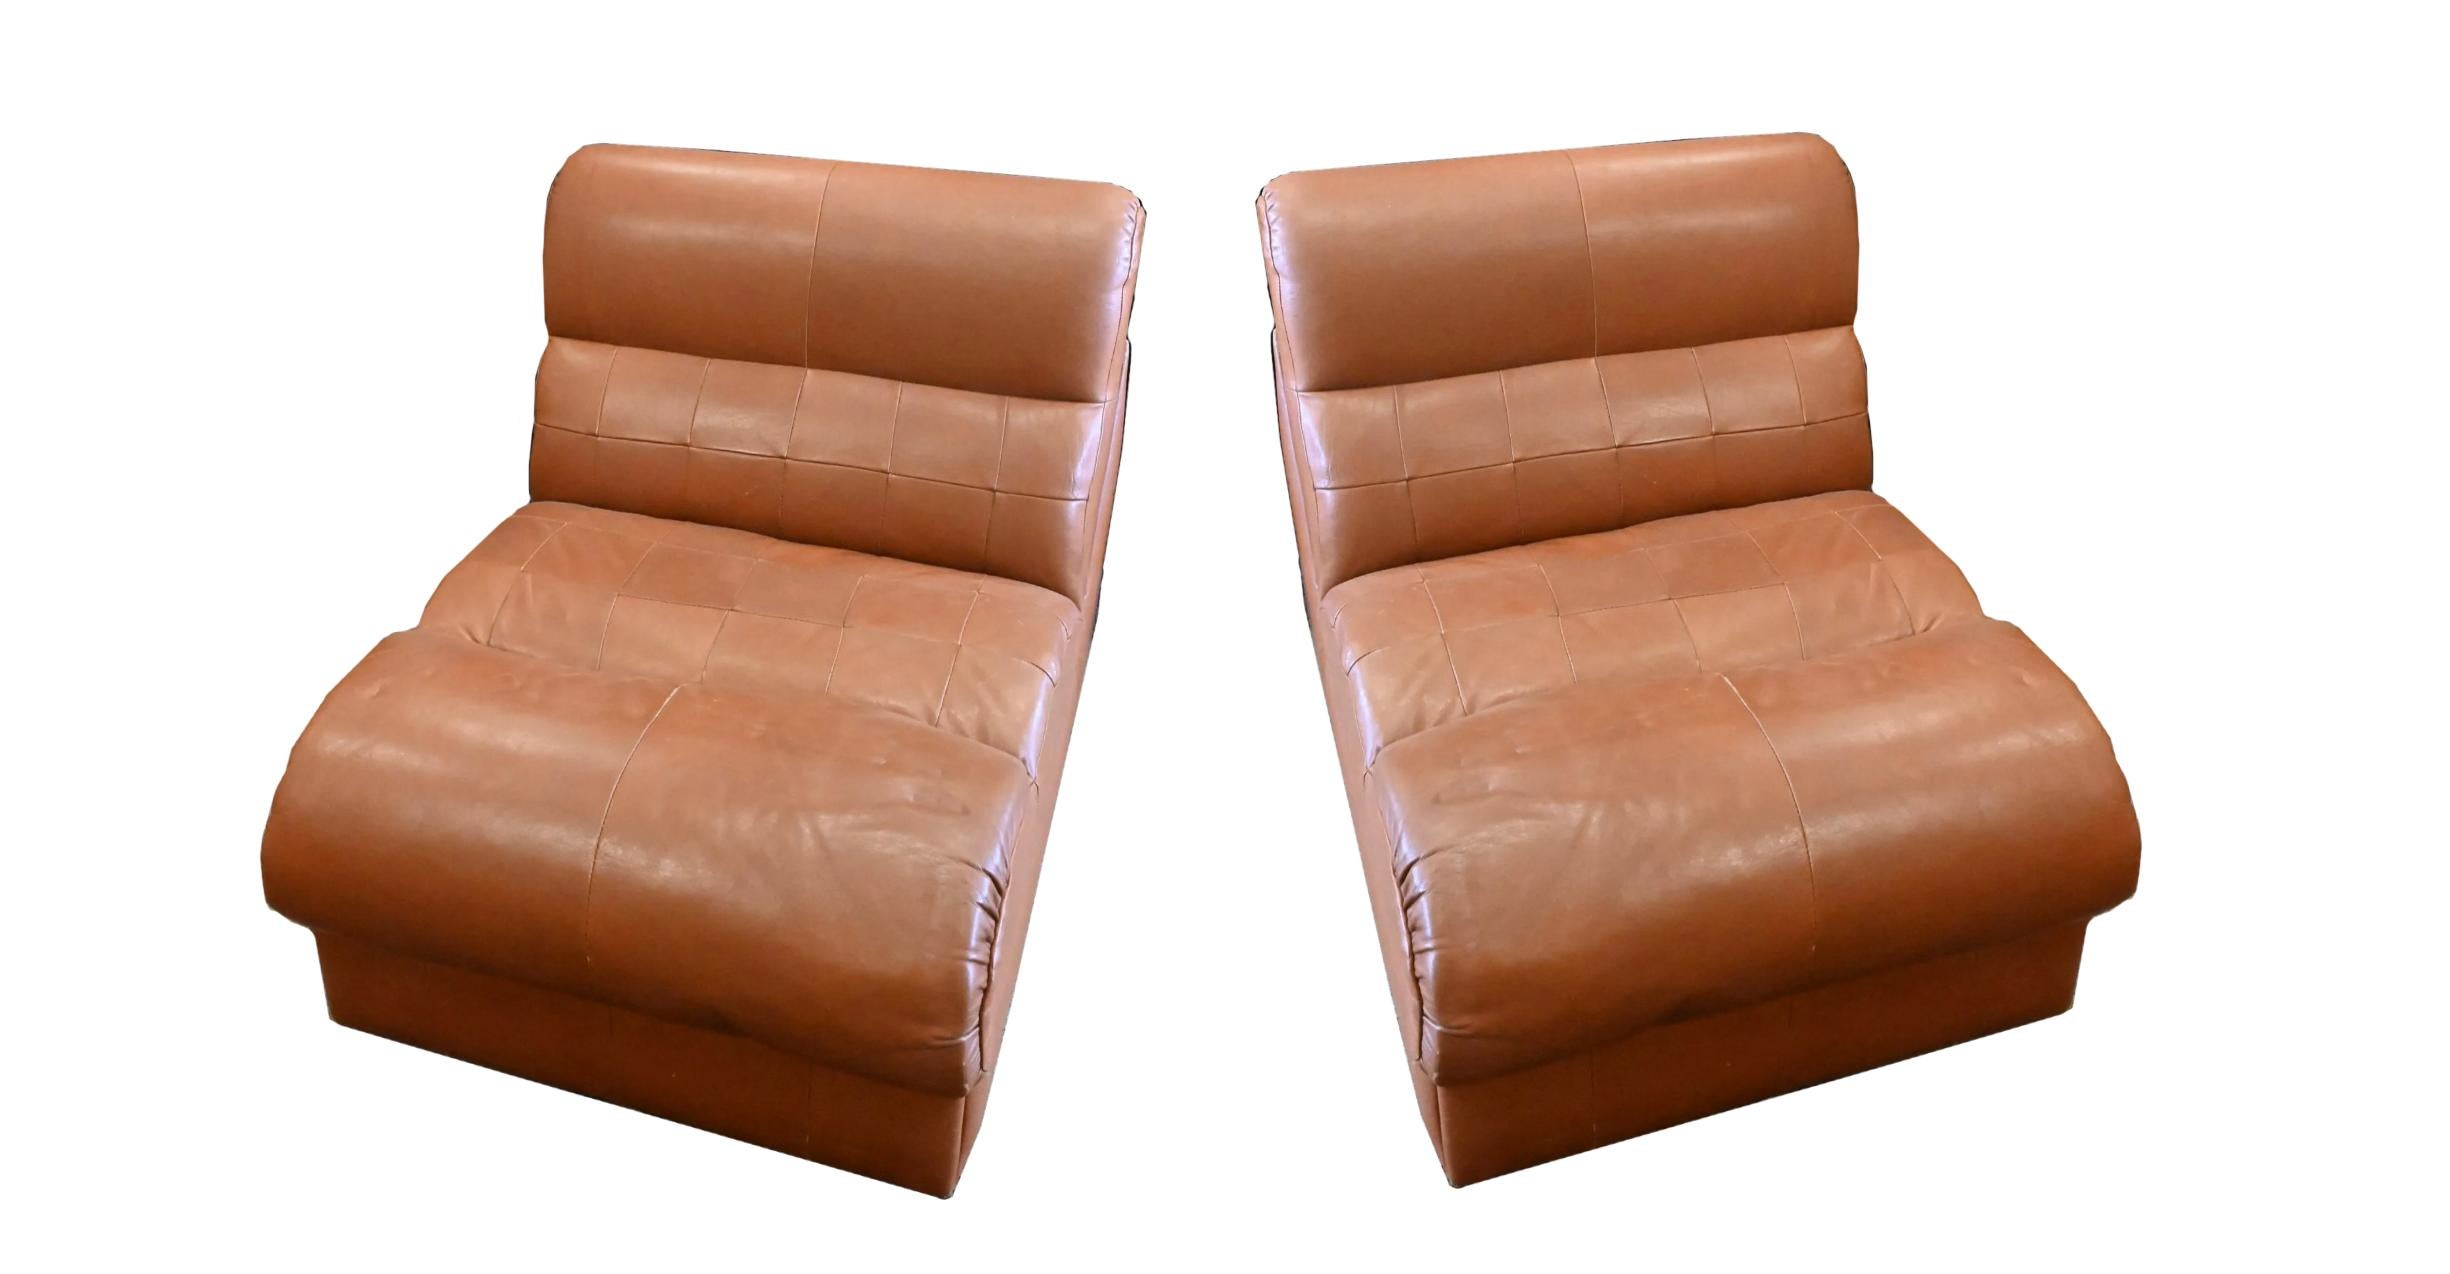 Paire de chaises longues en cuir rapiécé Percival Lafer du milieu du siècle. Cuir épais et souple en patchwork - conception modulaire ces (2) unités peuvent être utilisées séparément ou poussées l'une vers l'autre. Ces fauteuils font office de